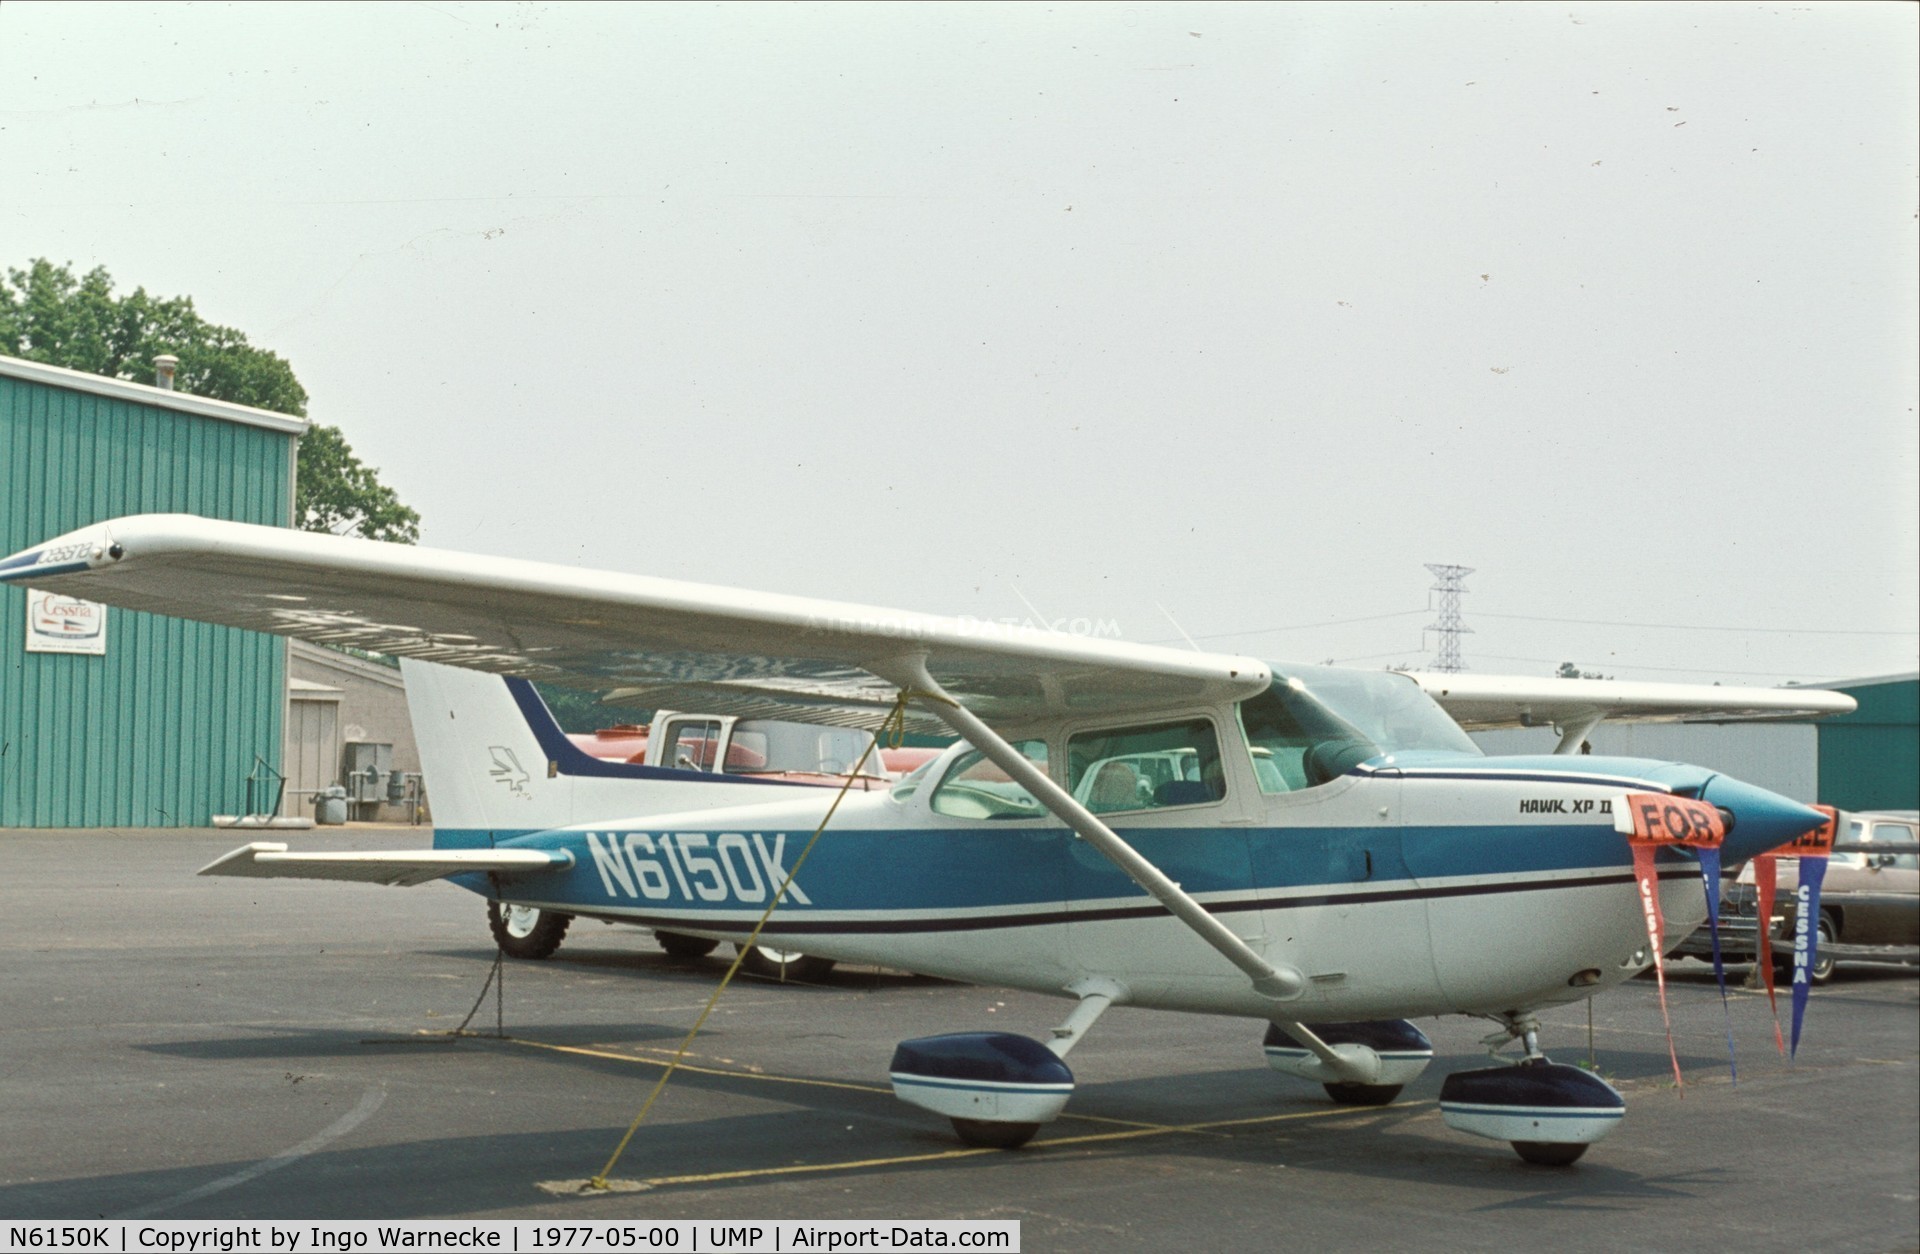 N6150K, 1976 Cessna R172K Hawk XP C/N R1722030, Cessna R172K Hawk XP II at Indianapolis Metropolitan Airport